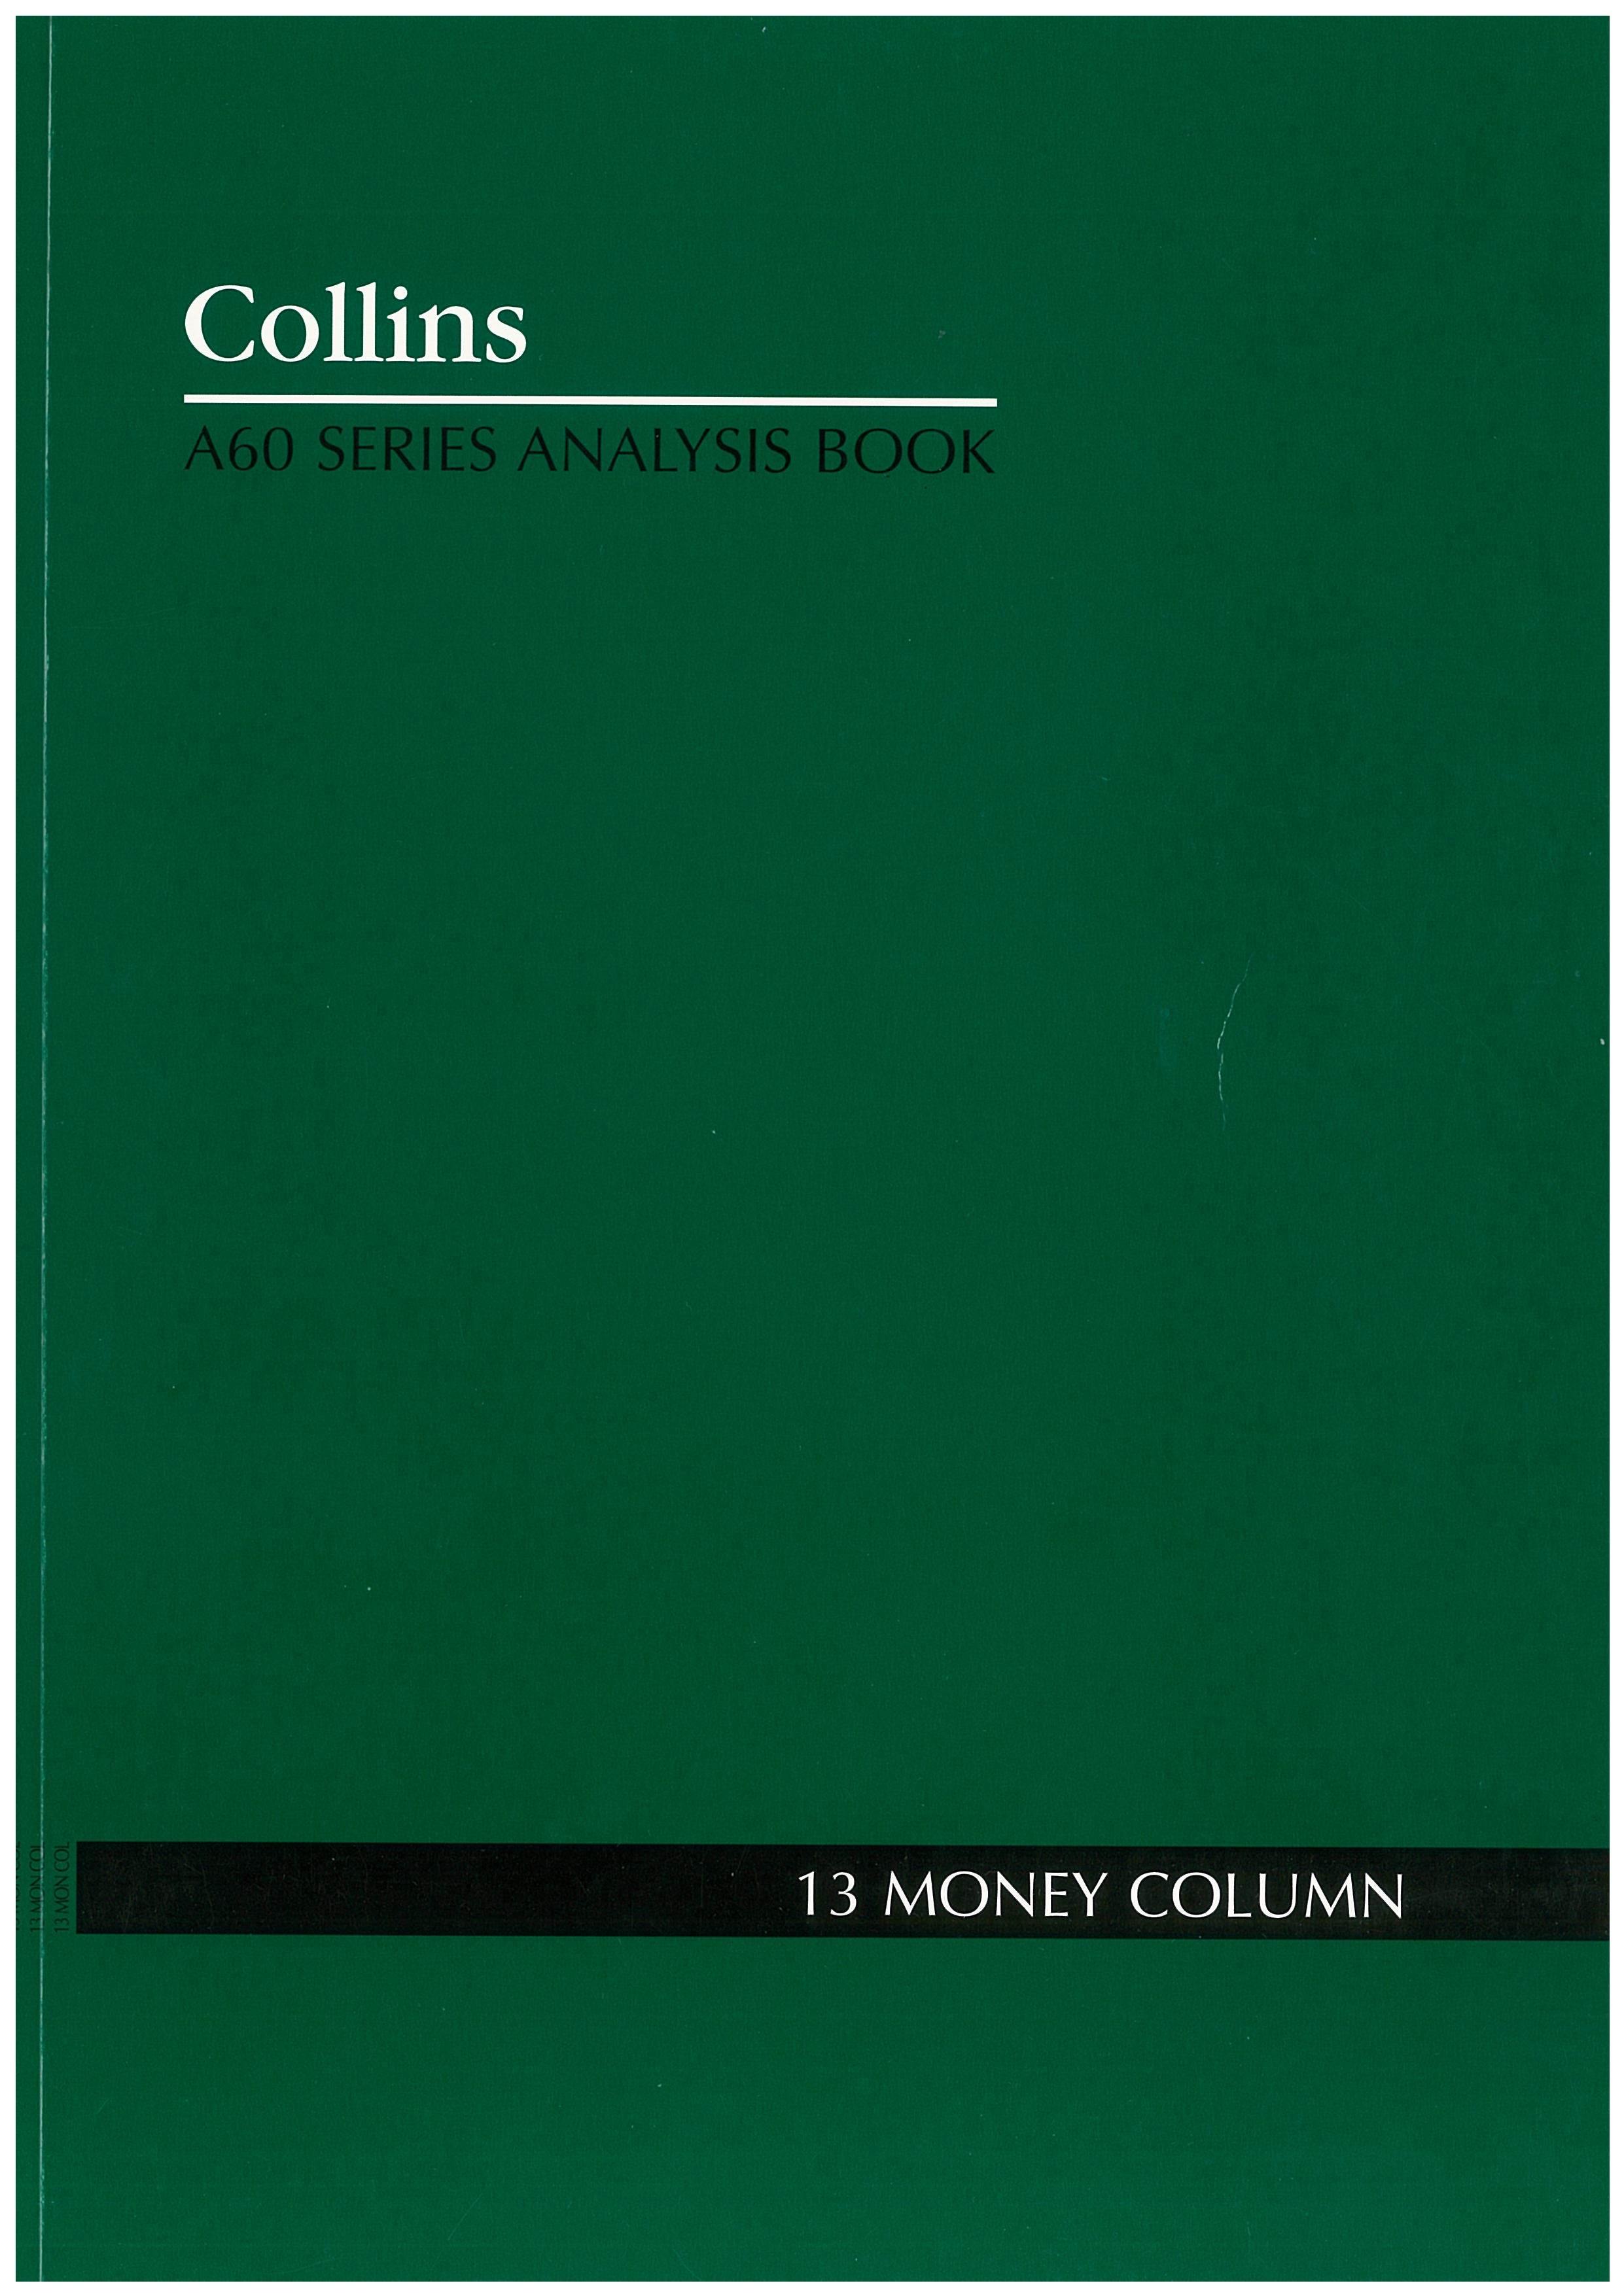 Analysis Book Series 'A60' 13 Money Column - Collins Debden